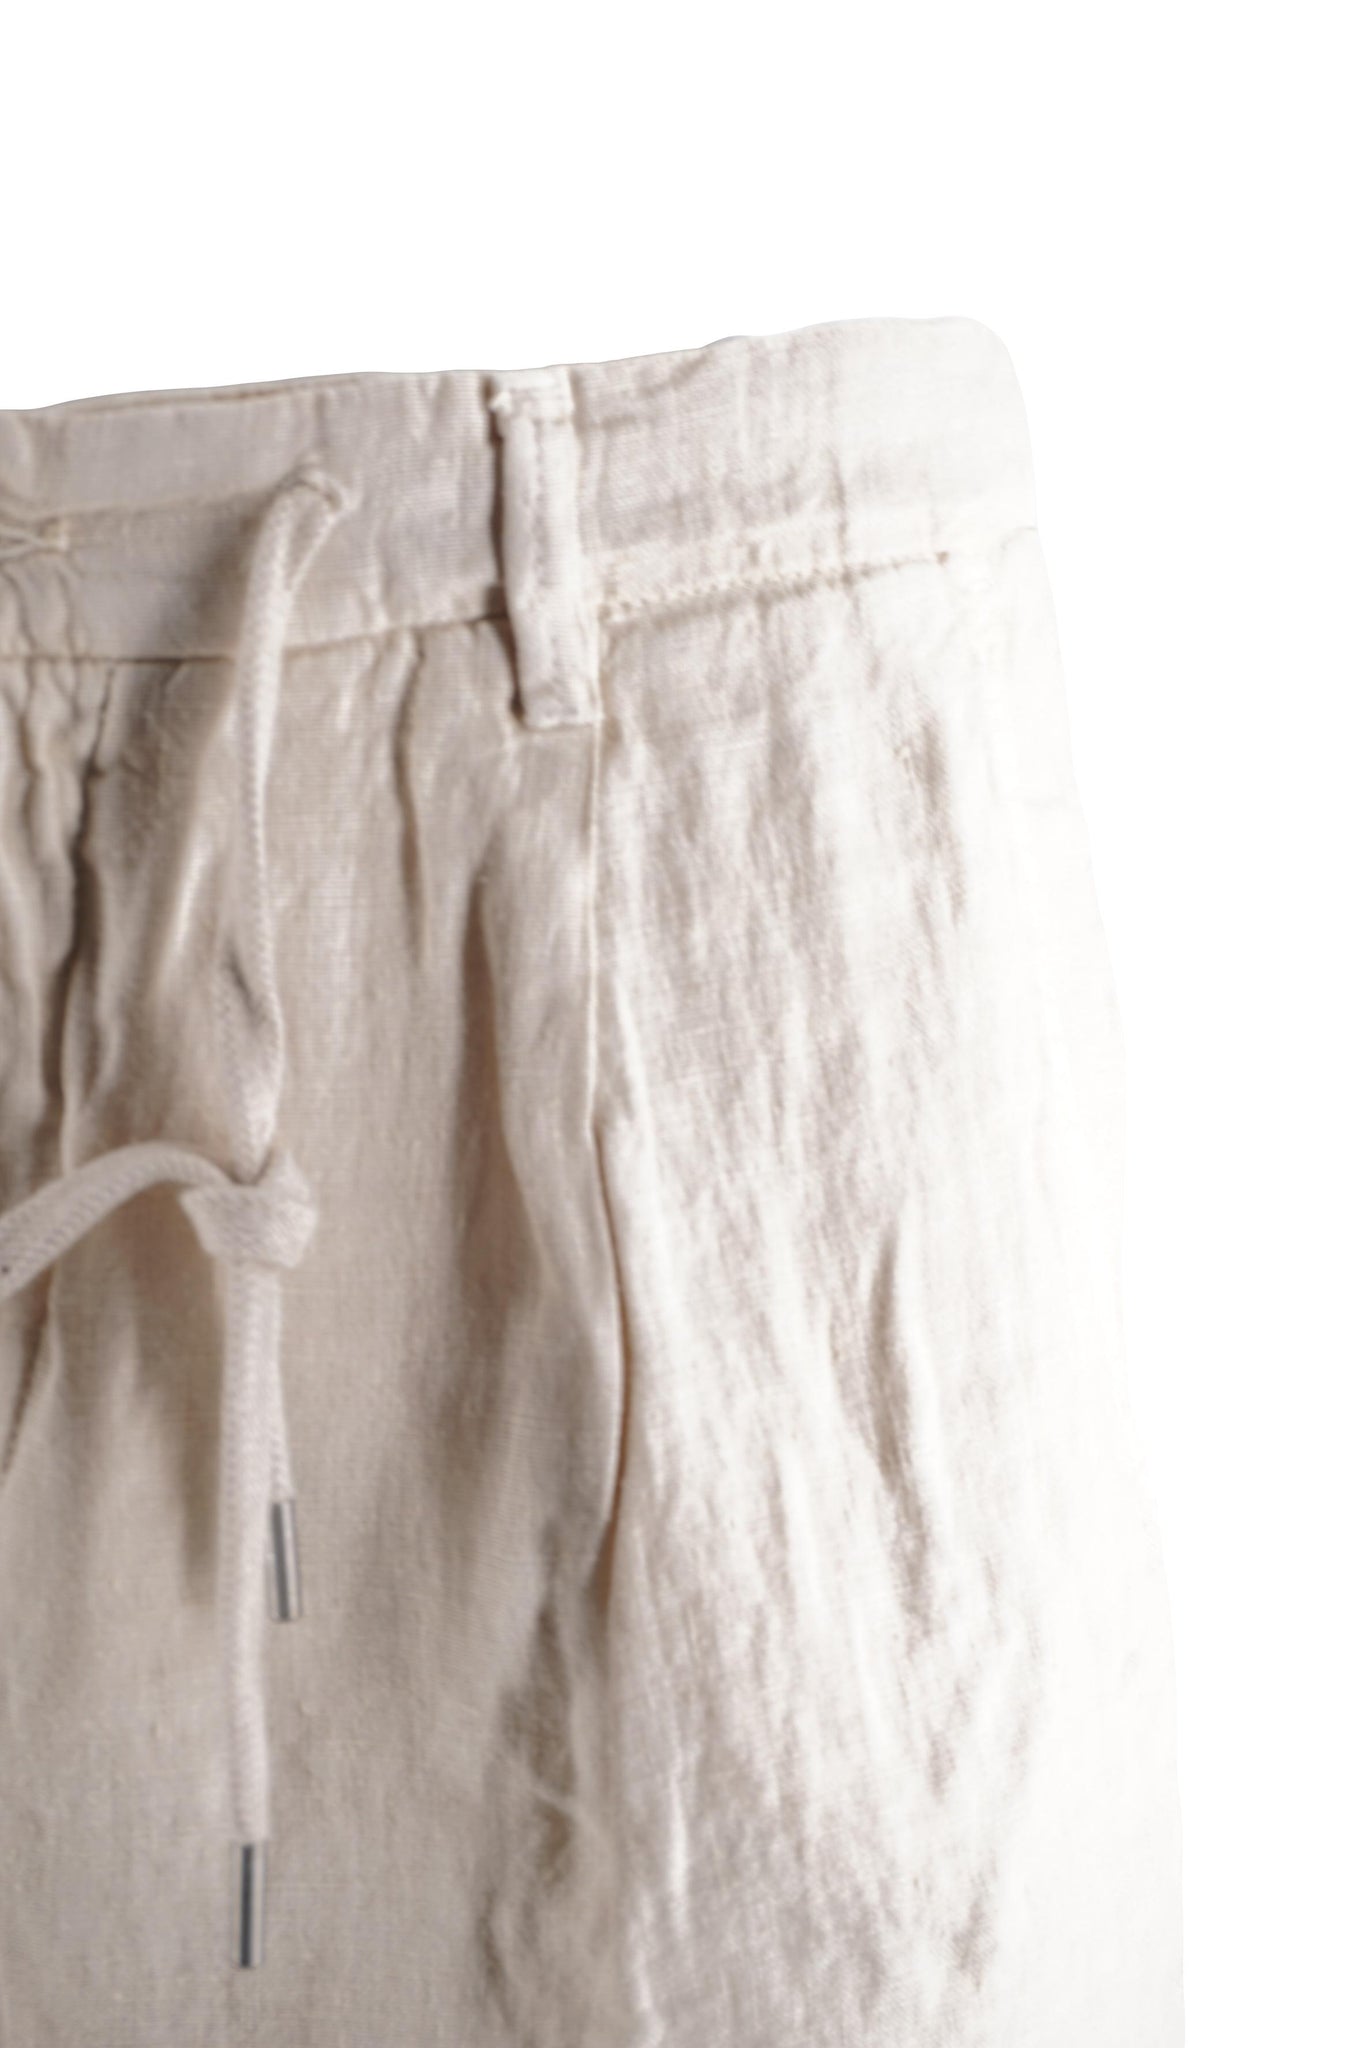 Pantaloncino in Lino Modello Coachbe / Beige - Ideal Moda